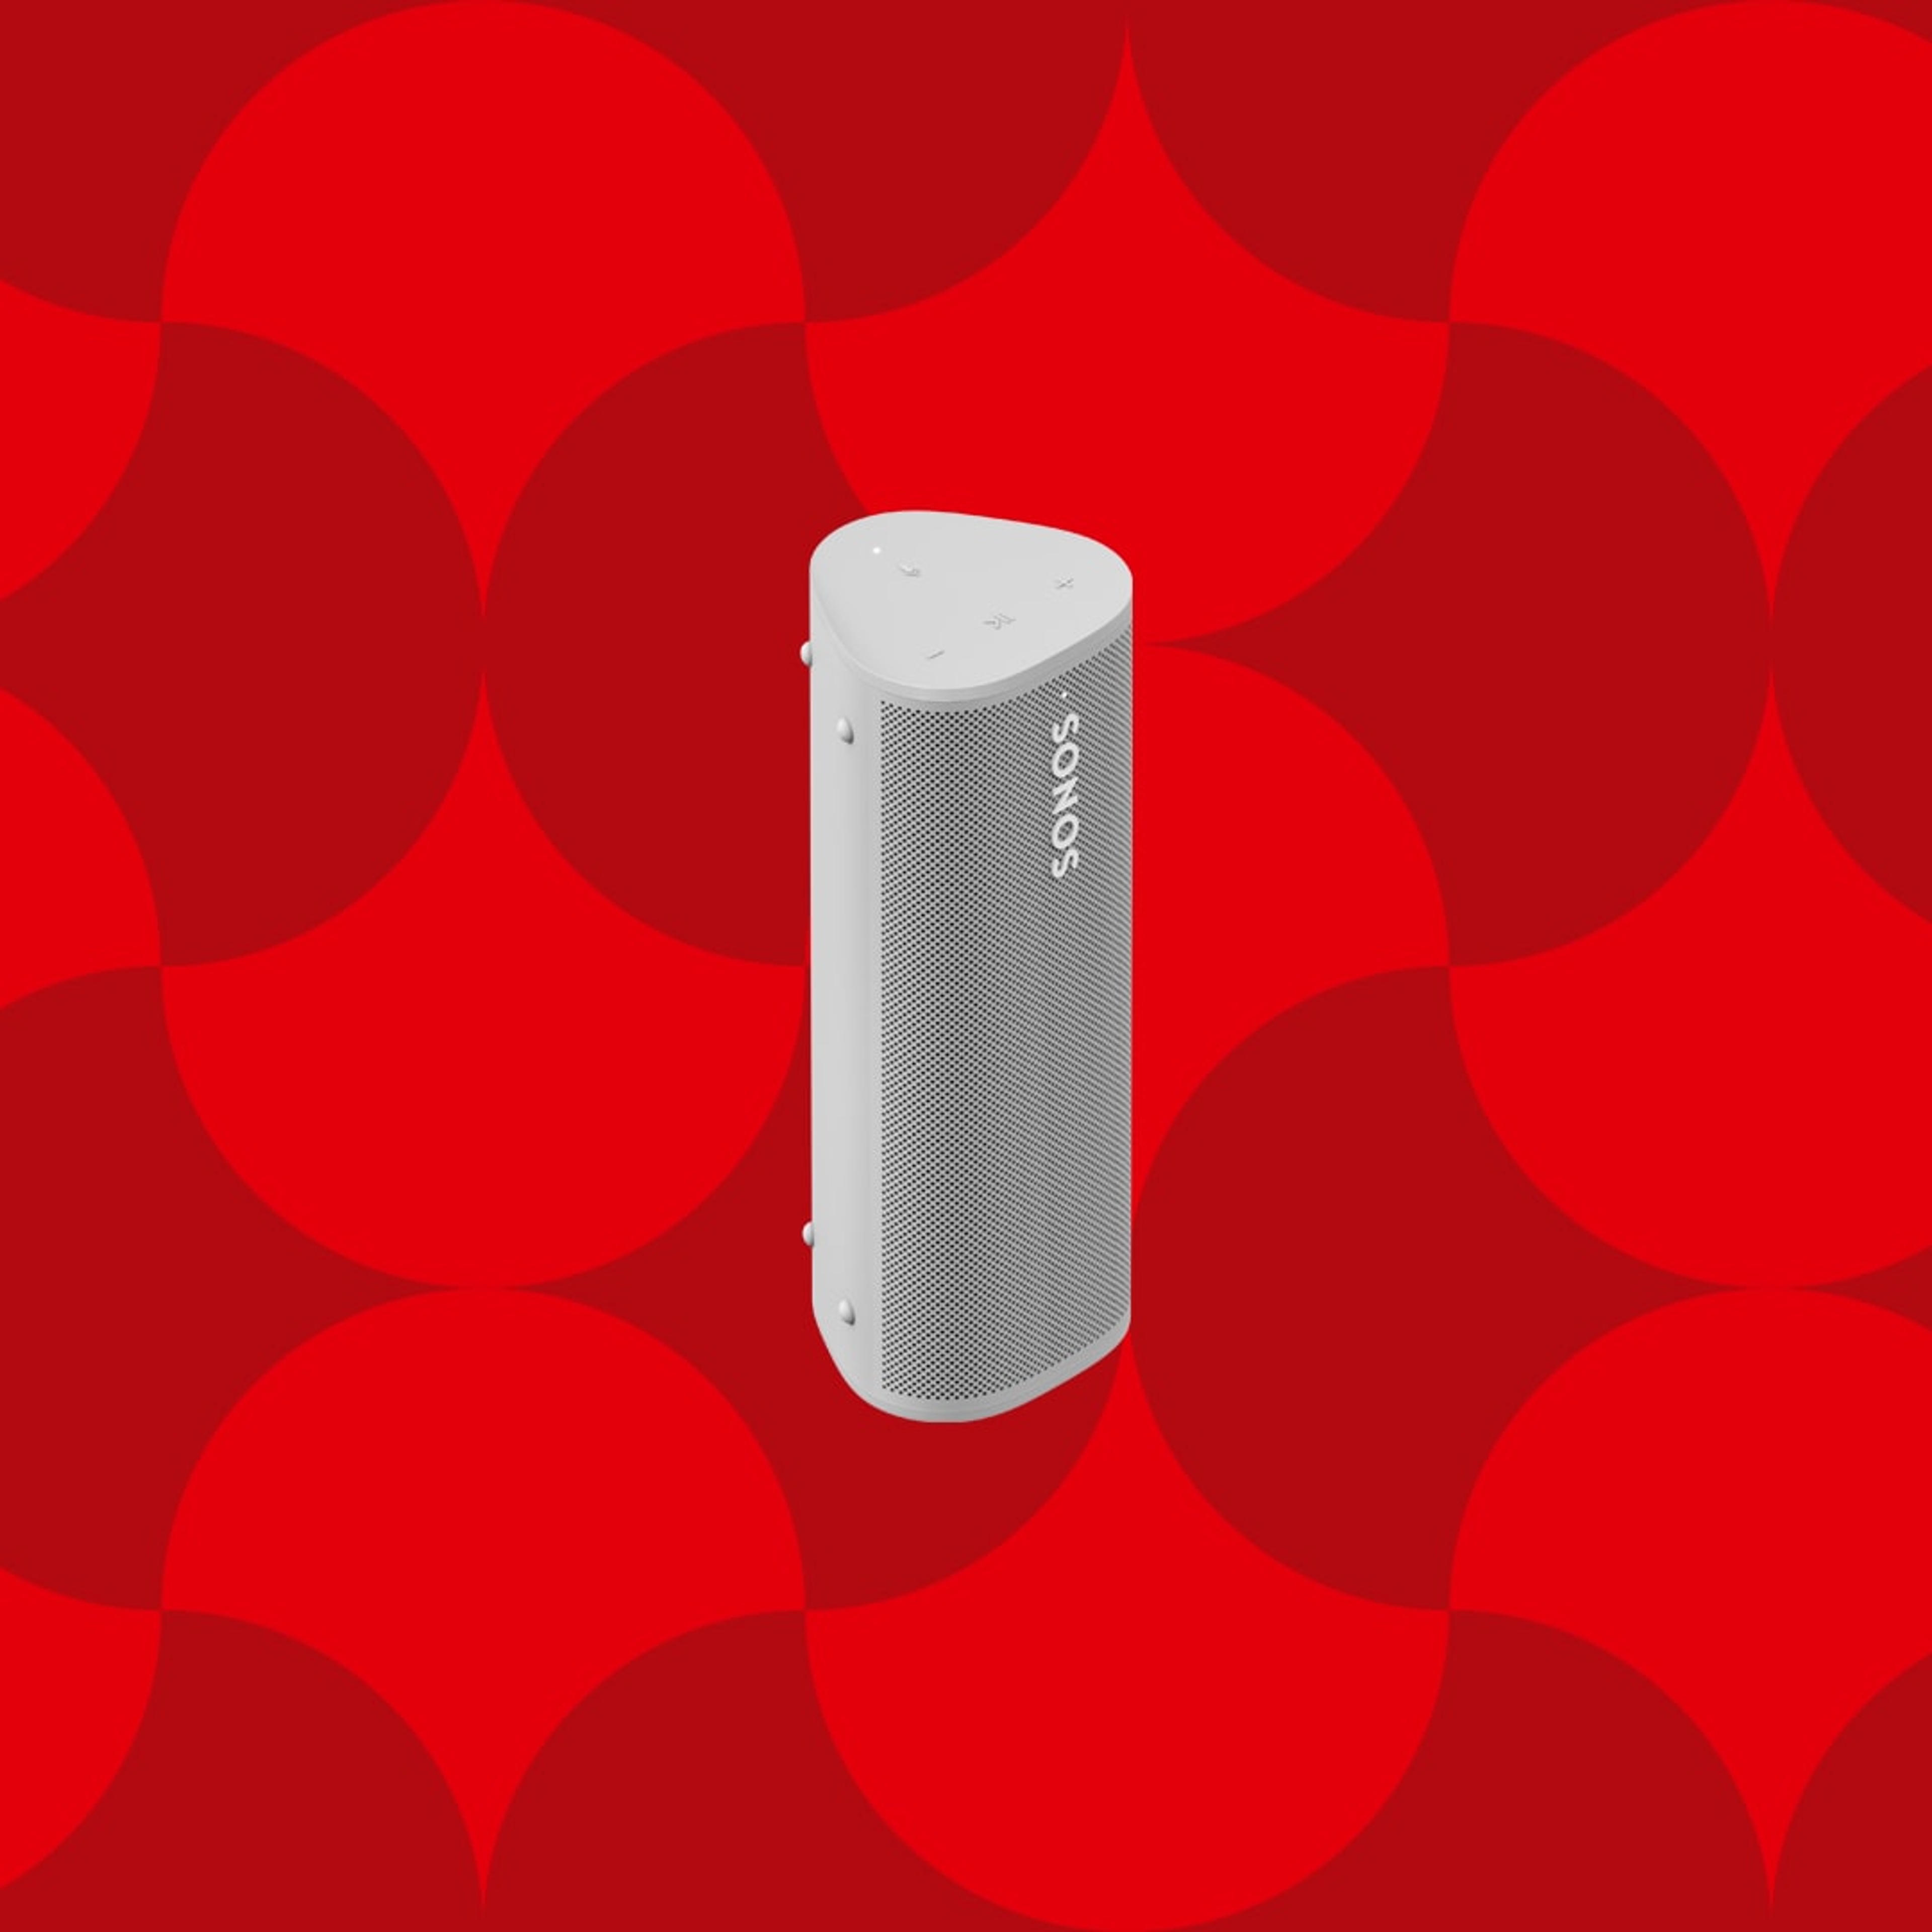 Afbeelding van een witte Sonos Roam draagbare speaker op een rode grafische vakantie-achtergrond